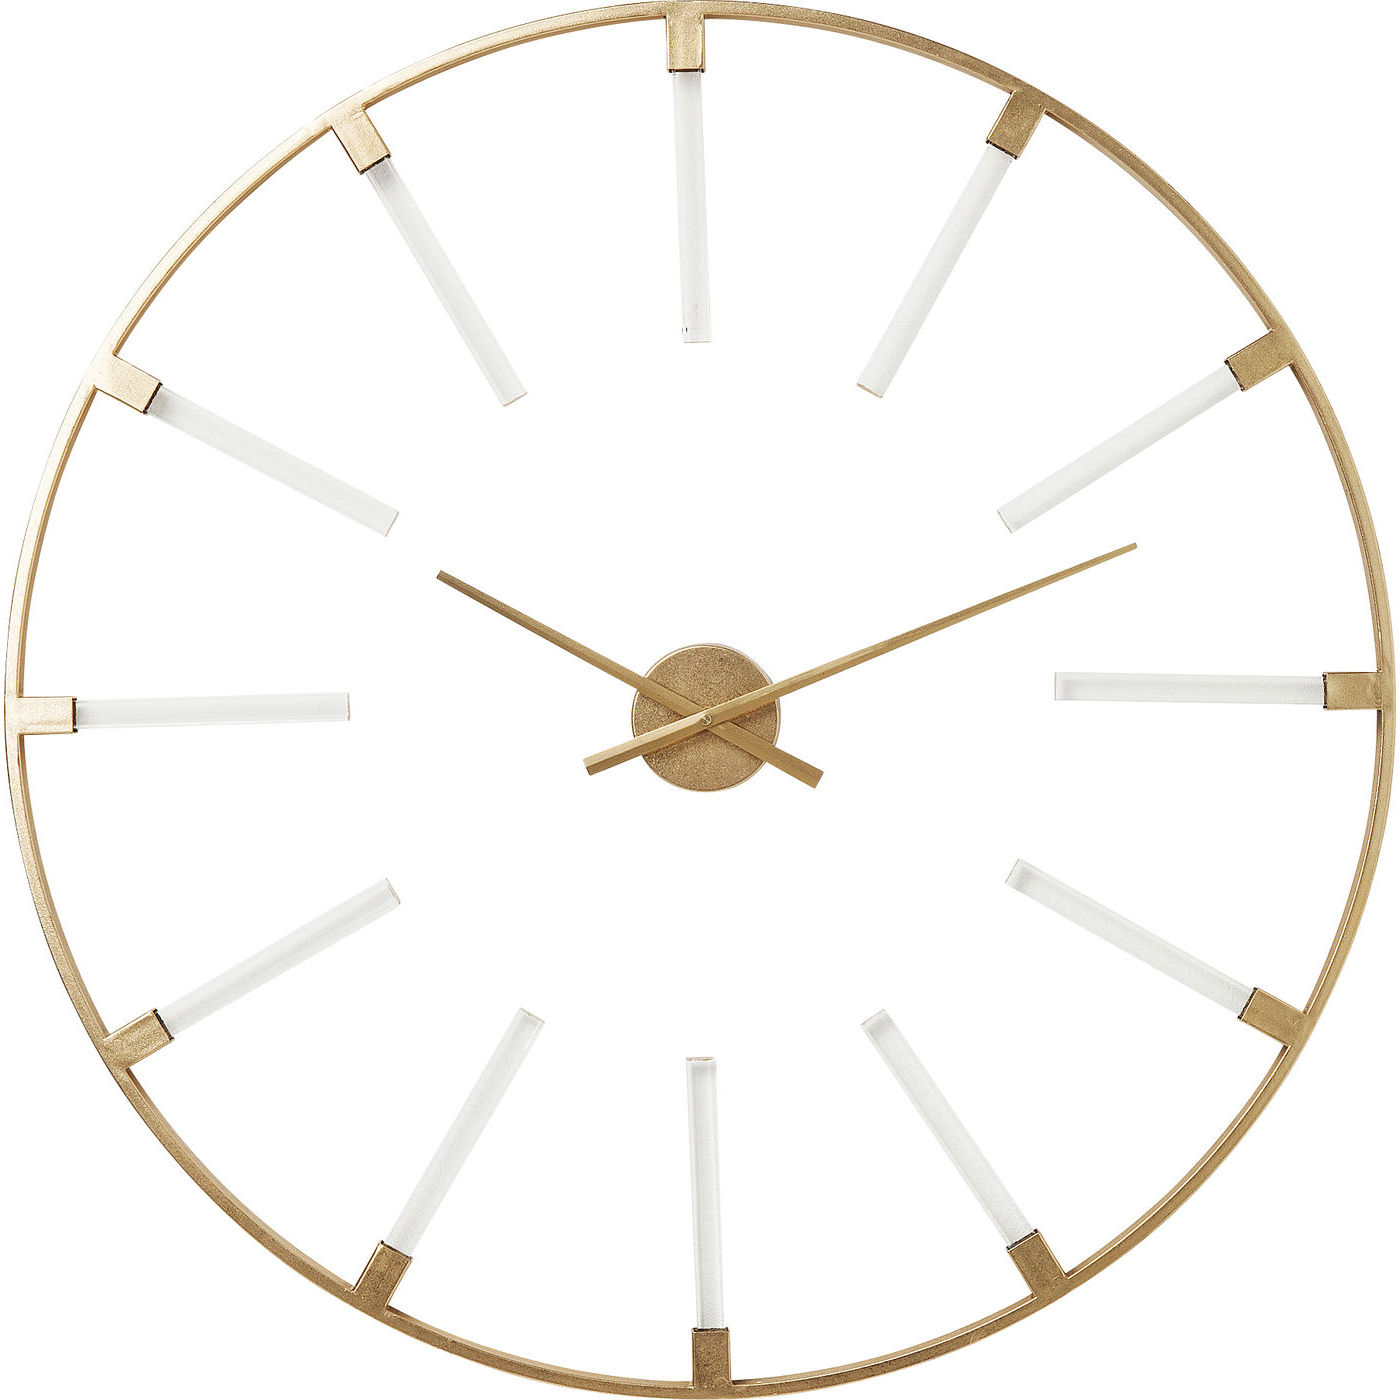 Круглые металлические часы. Часы настенные круглые золото d91 см, 19-ОА-6157, Garda Decor. Garda Decor часы. Часы настенные круглые золото d91 см. Гарда декор часы настенные.